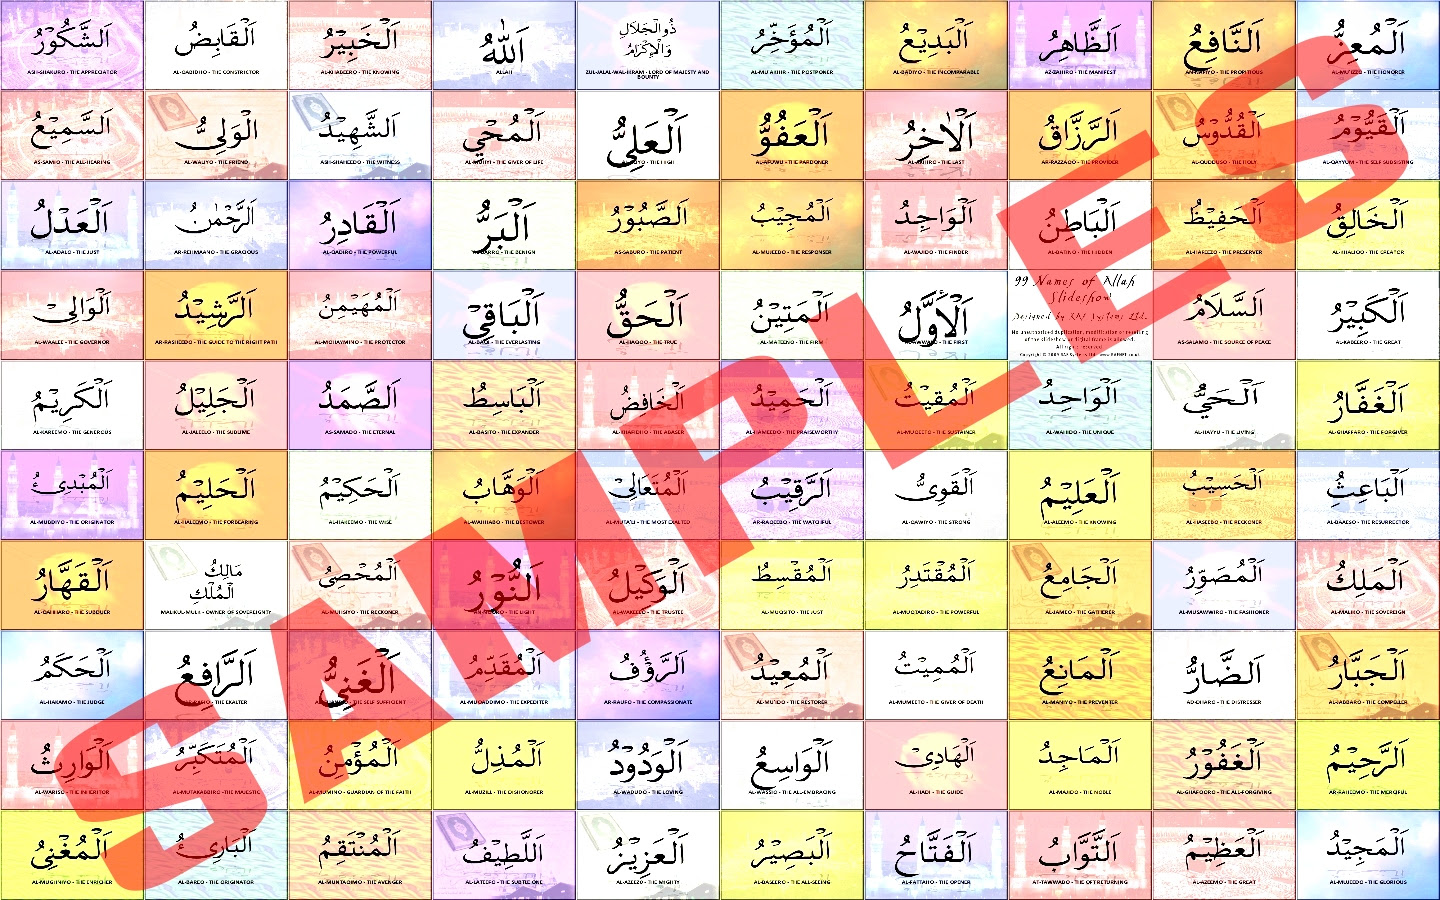 99 имена нашид. 99 Имен Аллаха. 99 Имён Аллаха на арабском. 99 Имен Аллаха 1 часть. Имена Аллаха с переводом.